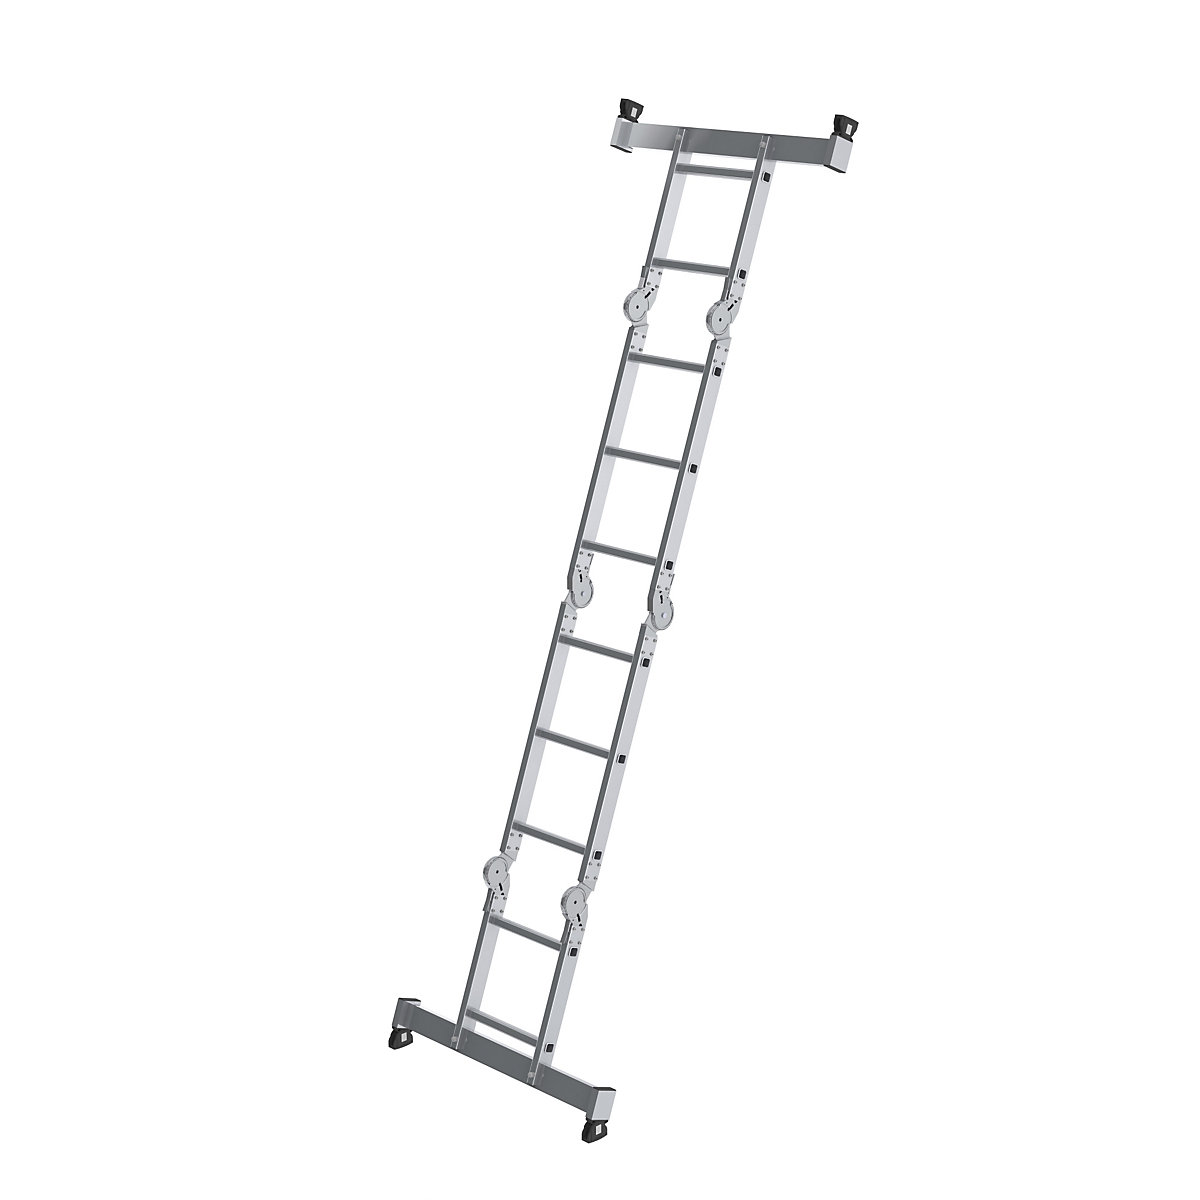 Aluminium multi-purpose ladder - MUNK